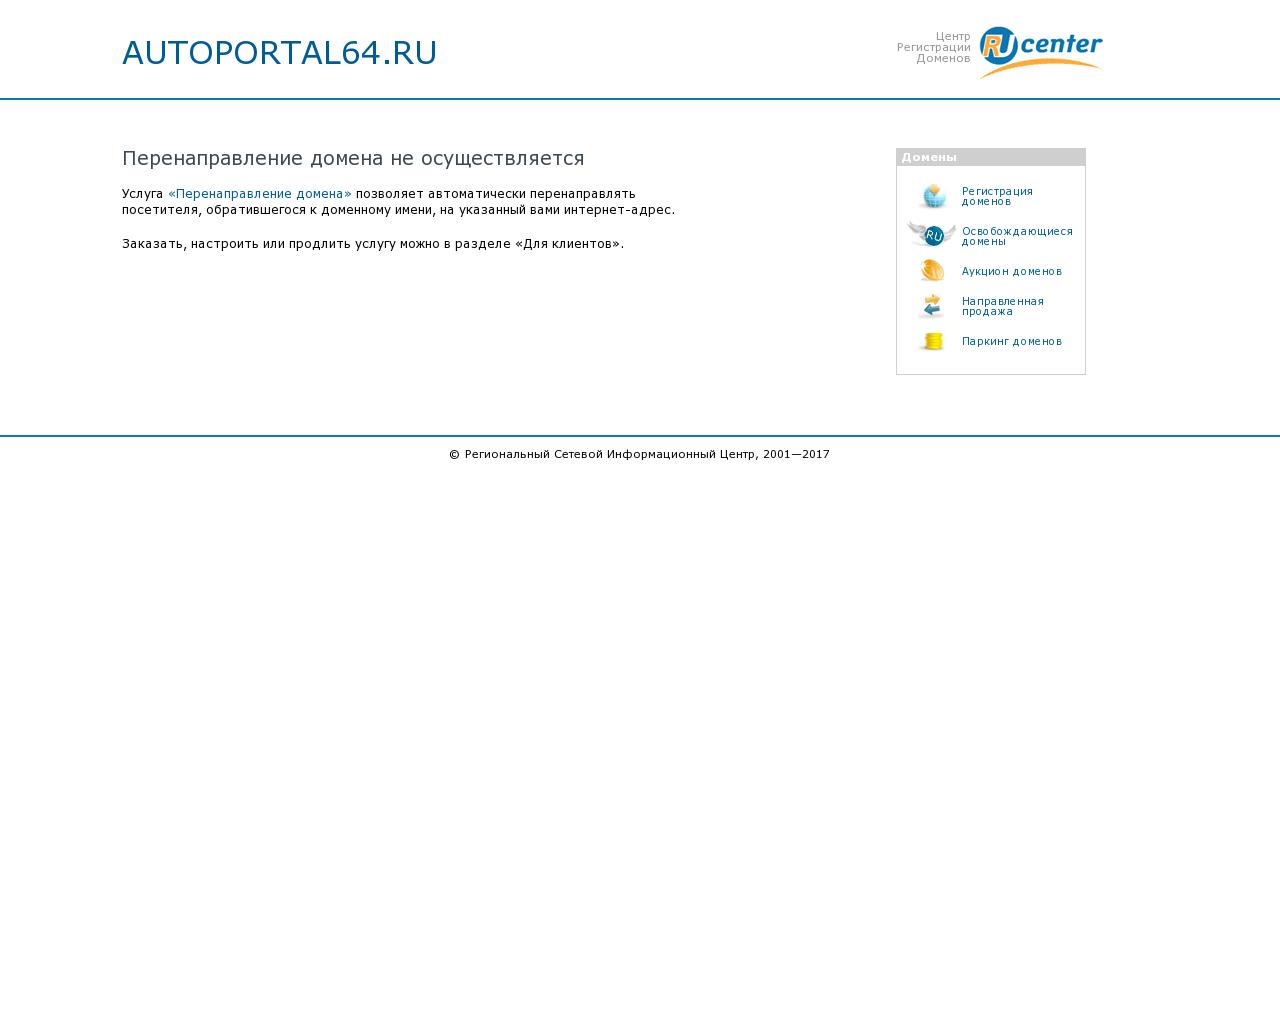 Изображение сайта autoportal64.ru в разрешении 1280x1024